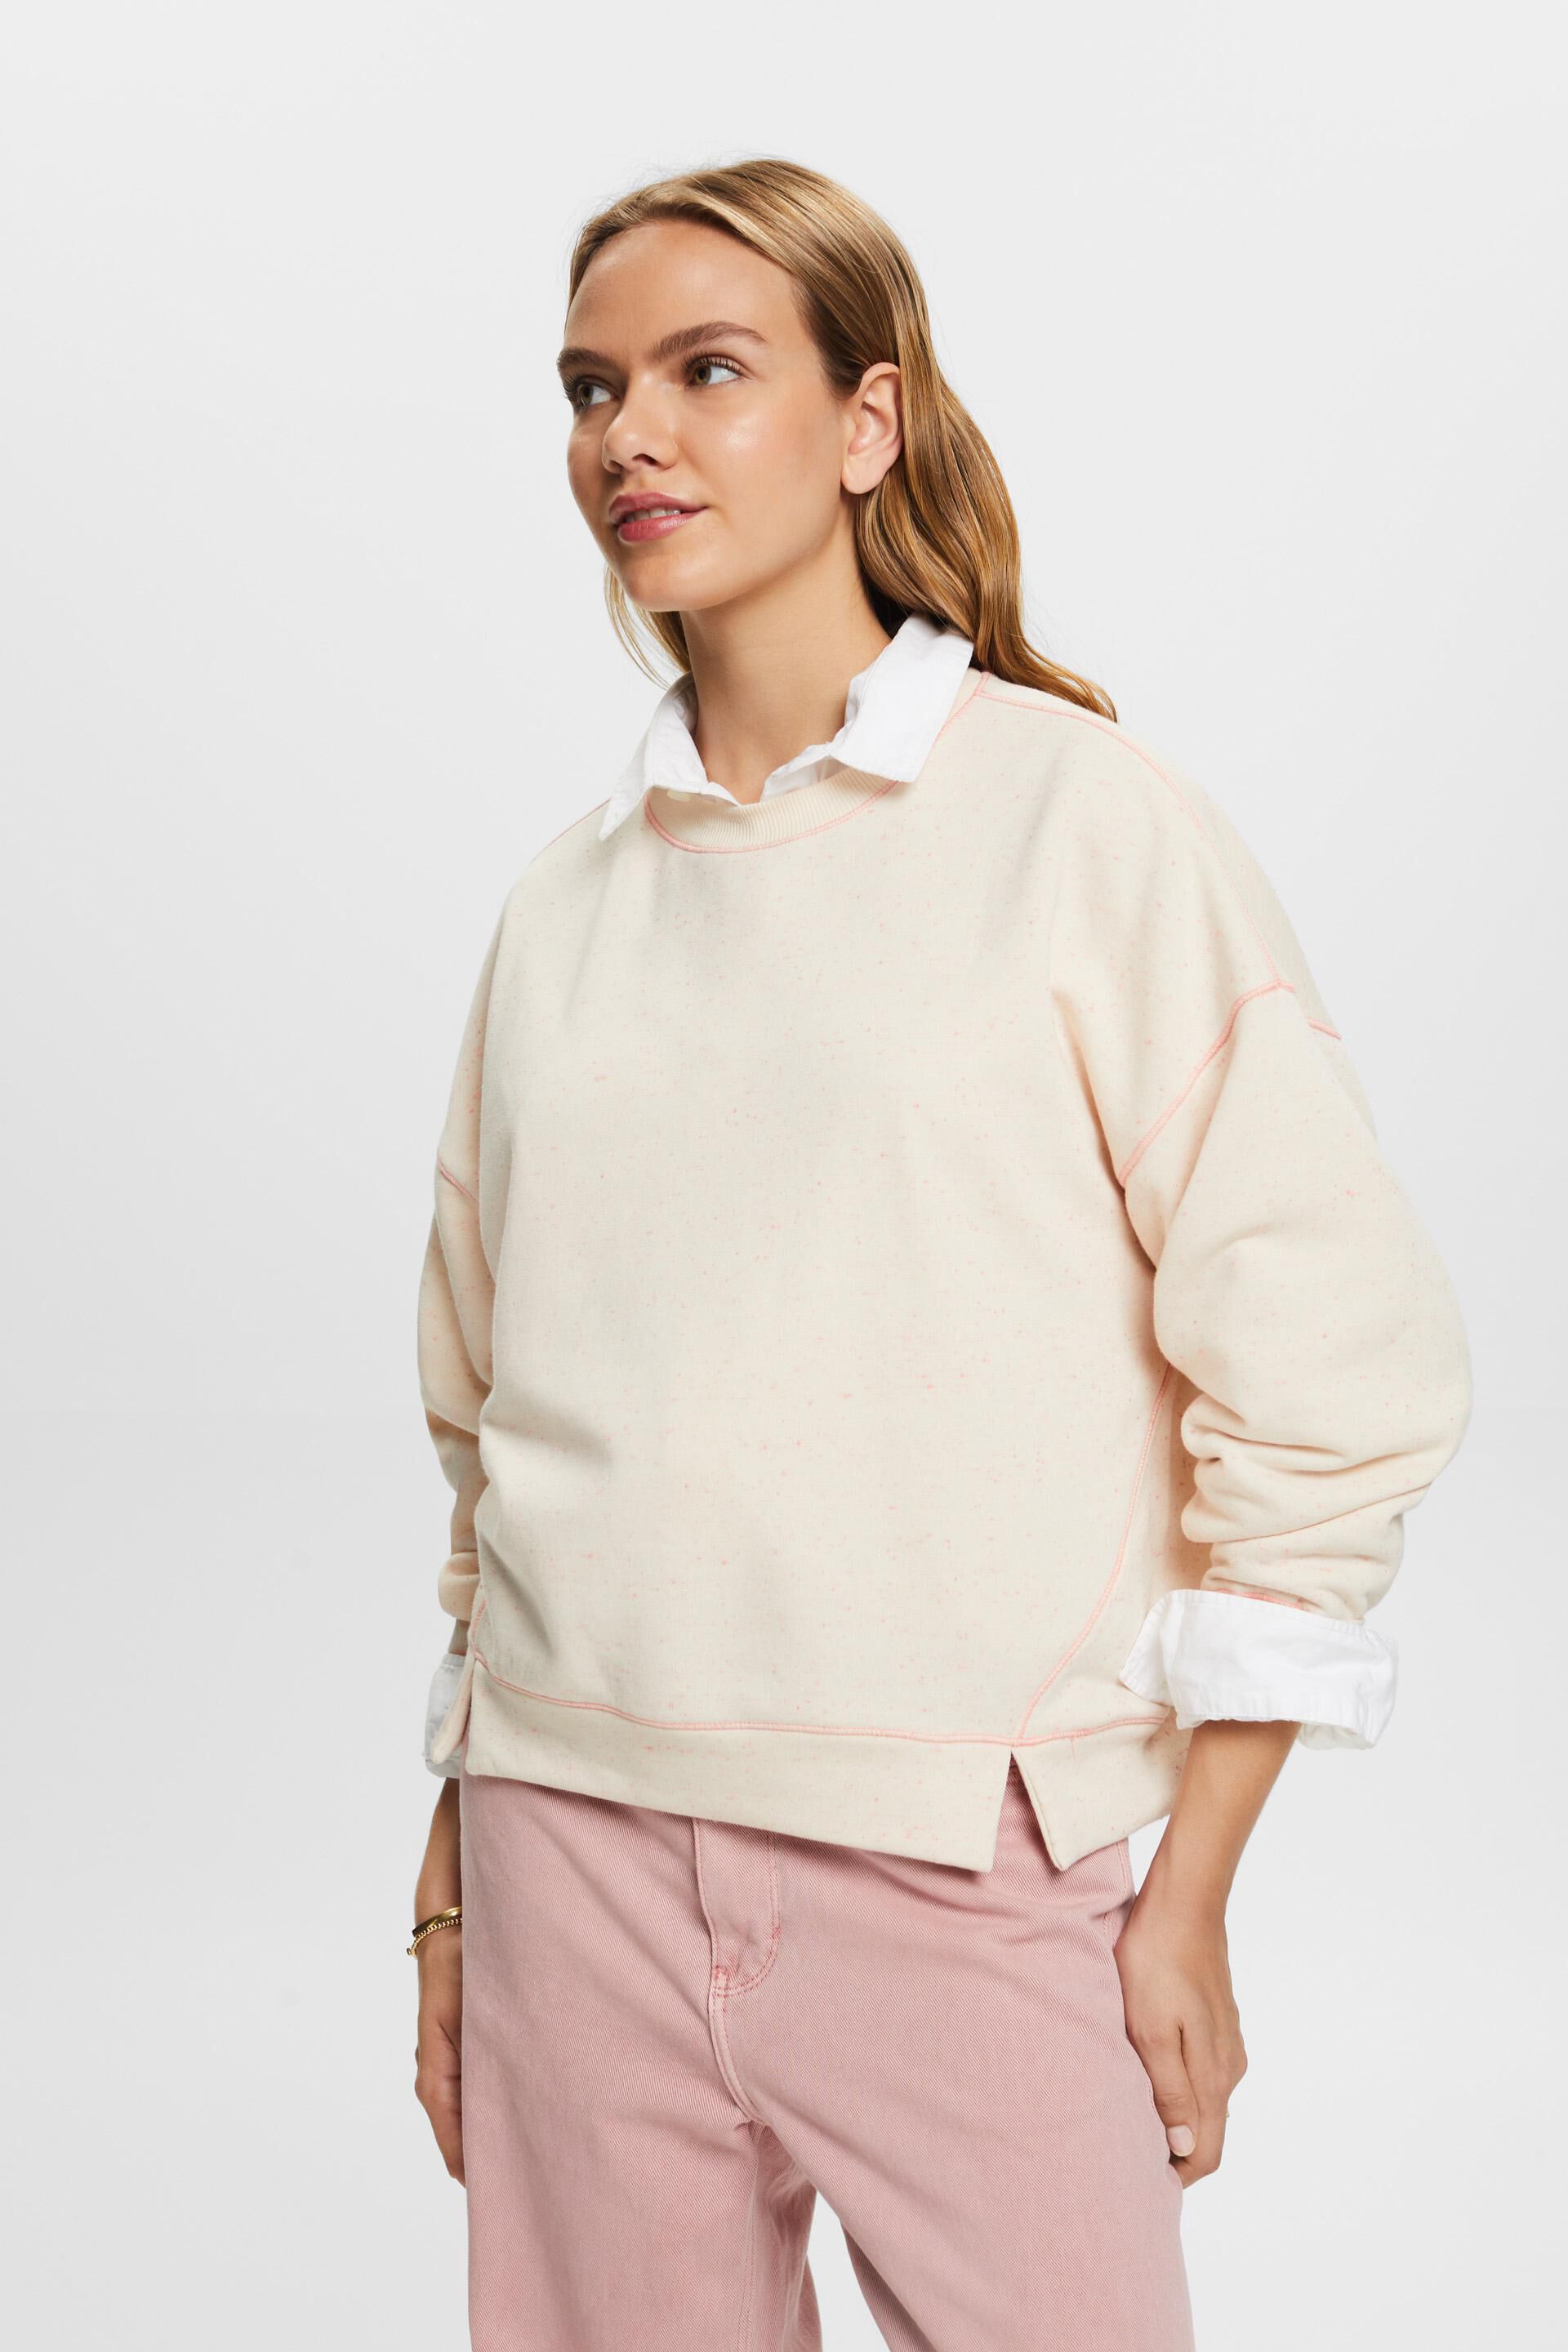 Esprit sweatshirt, Sprinkled cotton blend